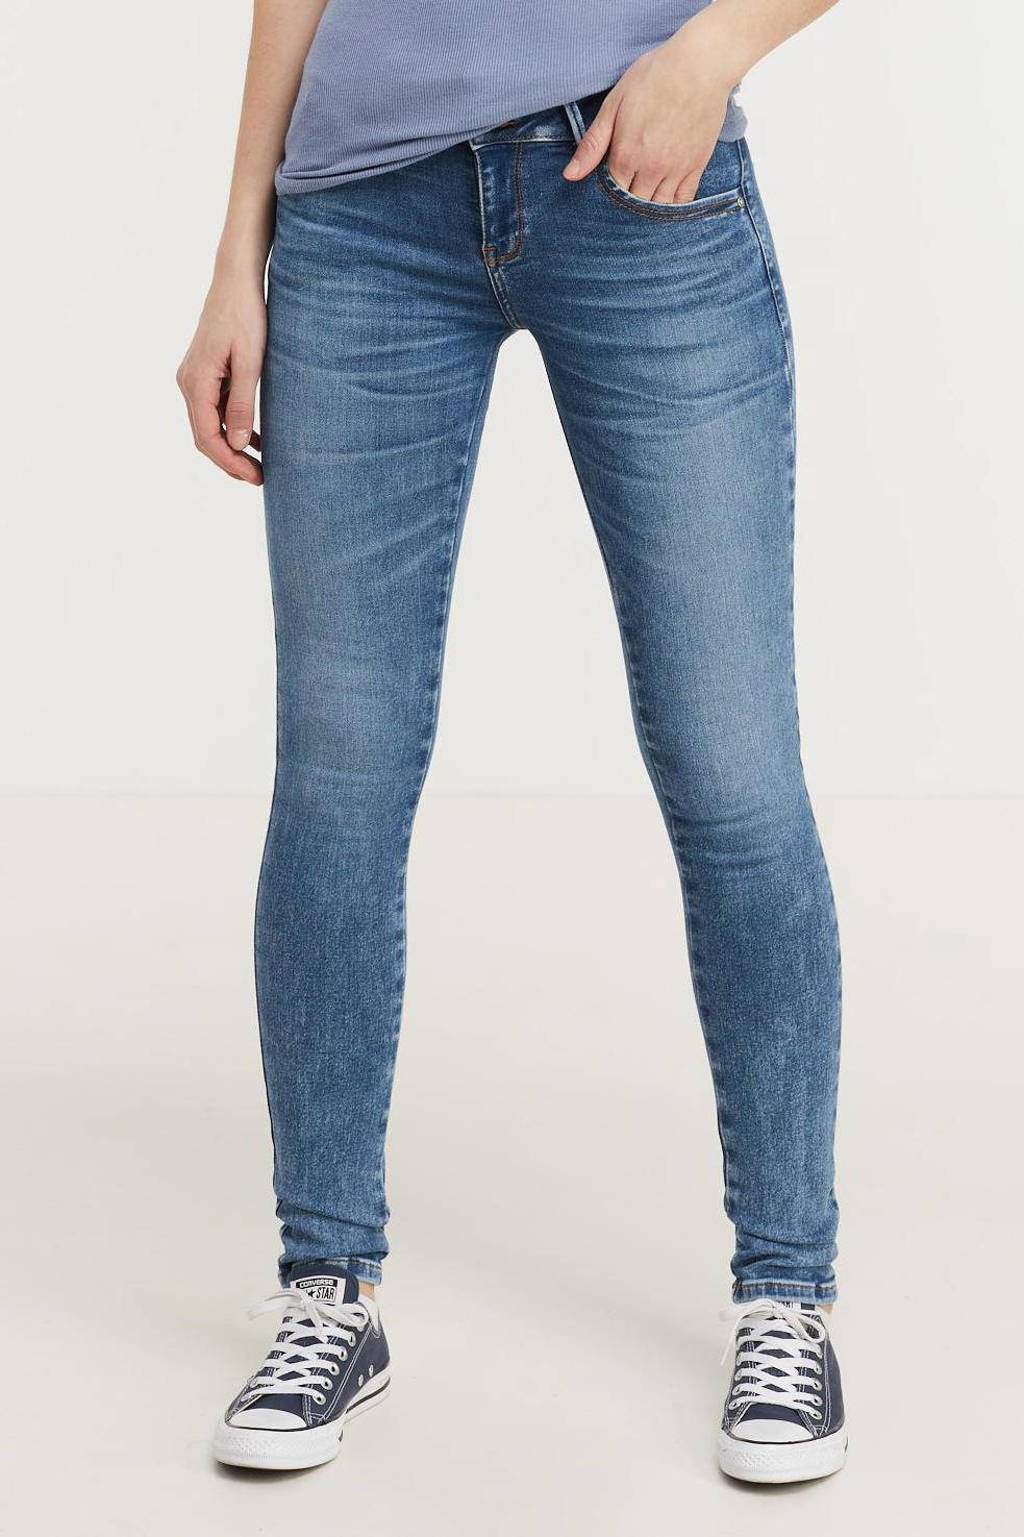 Blauwe dames LTB Be Yourself slim fit jeans Molly M van stretchdenim met regular waist